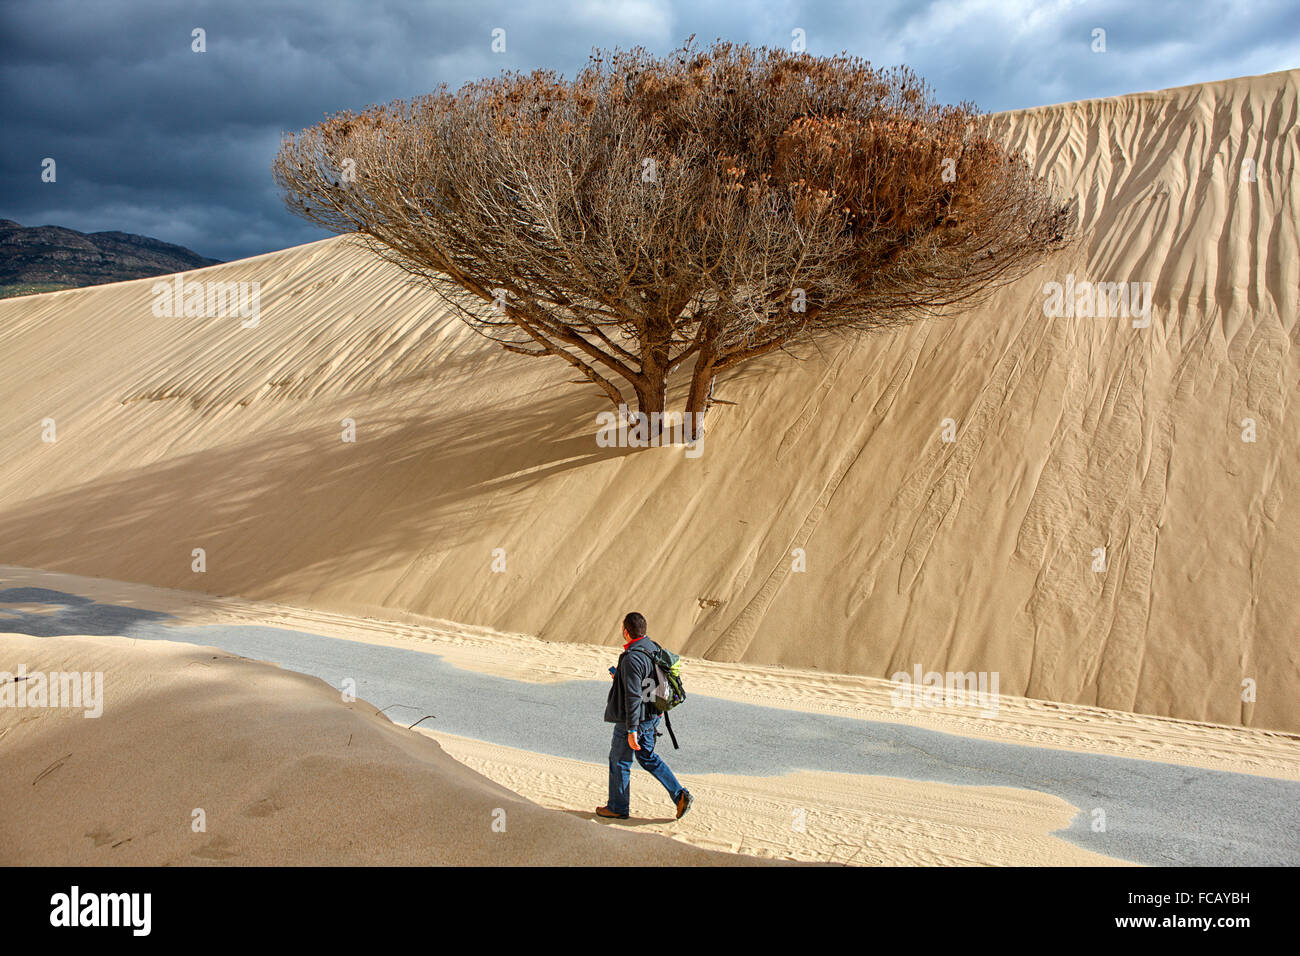 Bologna dune è una duna di sabbia oltre trenta metri di altezza si trova a nord-ovest della baia di Bolog verso Punta Camarinal sull'Atlantico Foto Stock